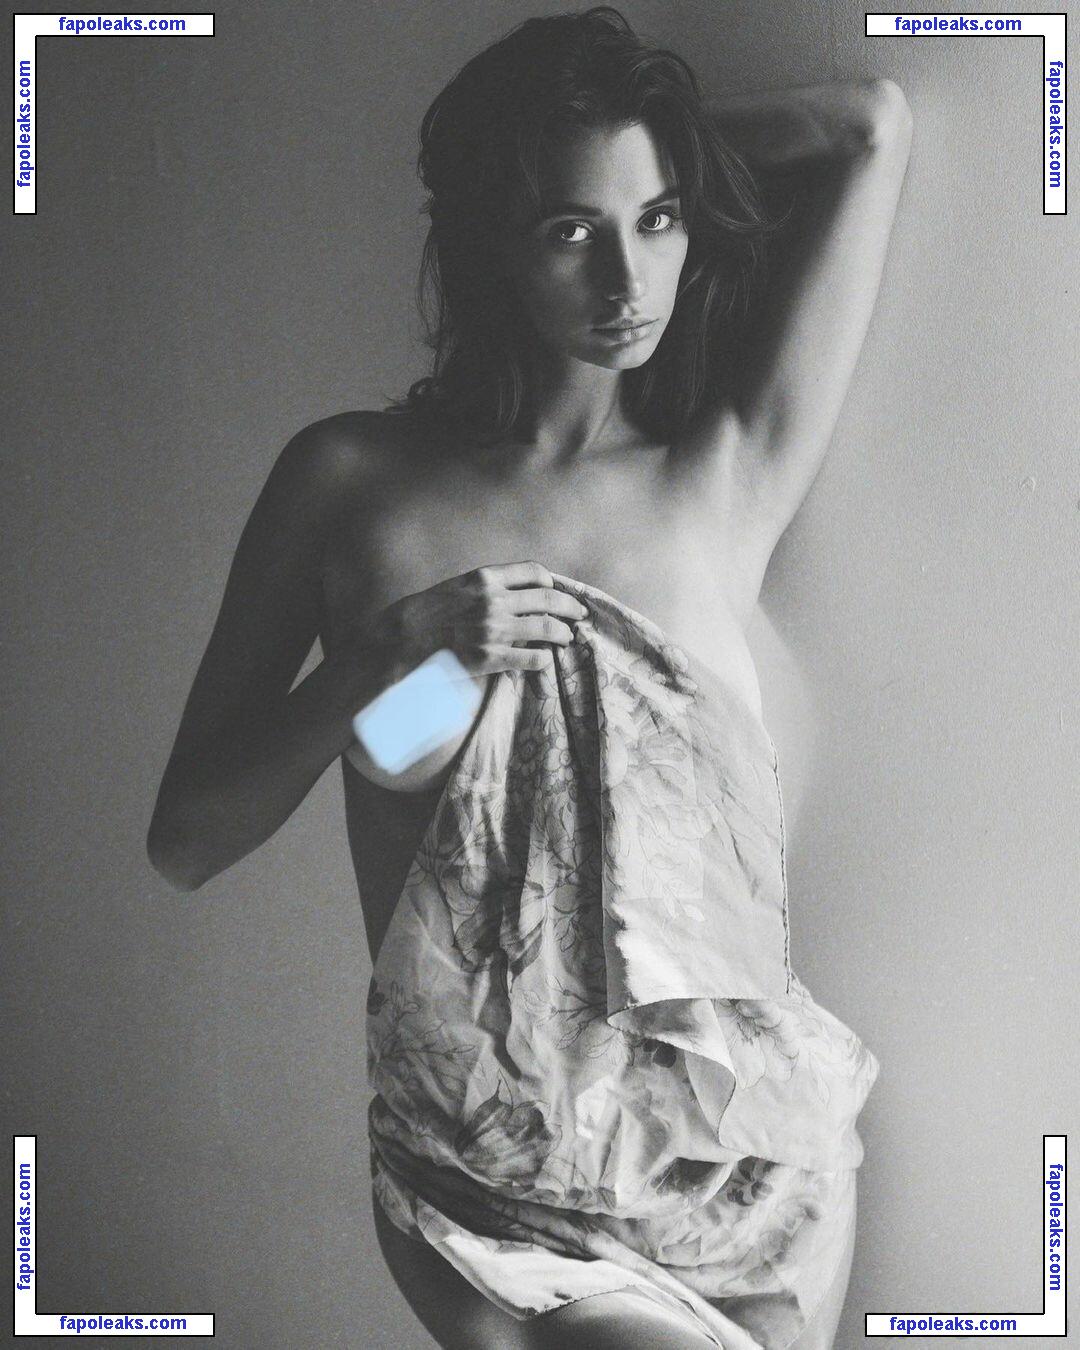 Jennifer Laptiacru / itsjennyla nude photo #0001 from OnlyFans